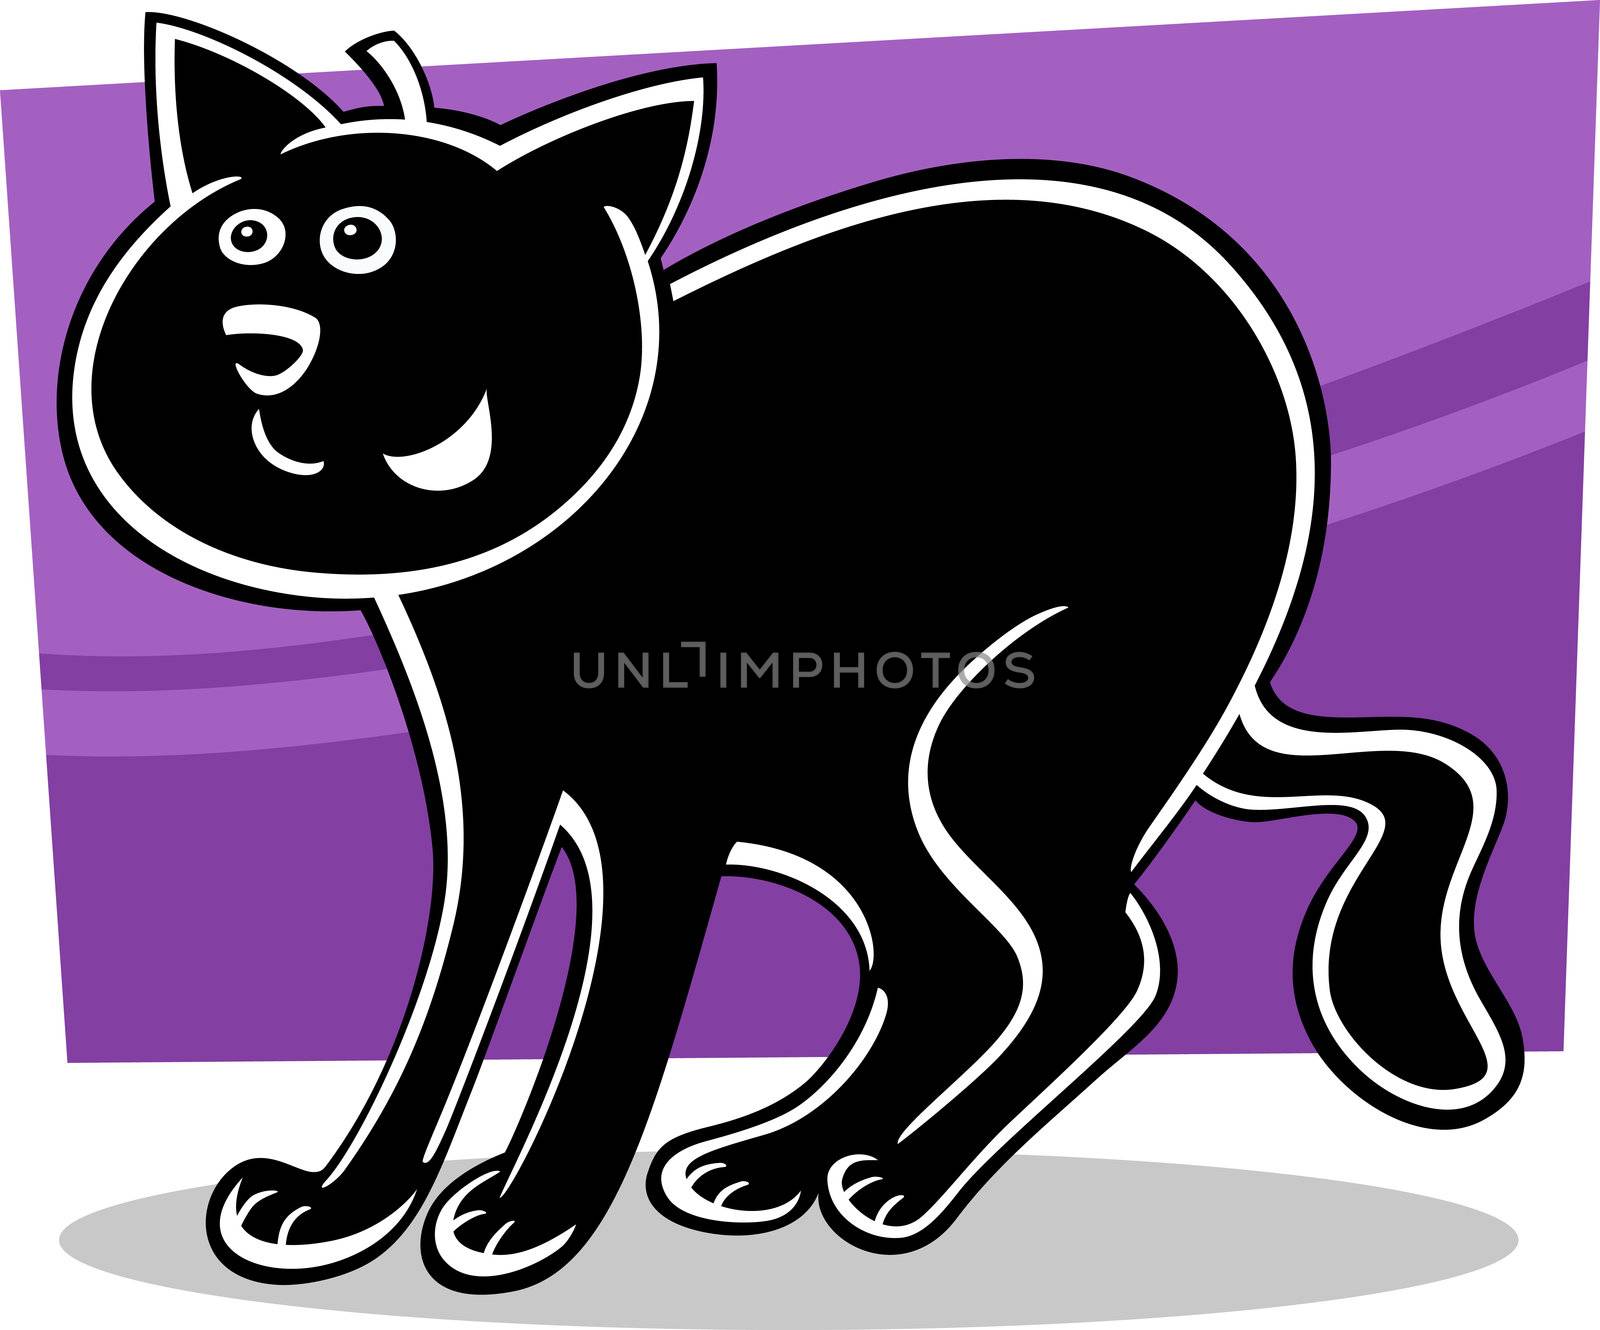 cartoon illustration of funny black cat or kitten